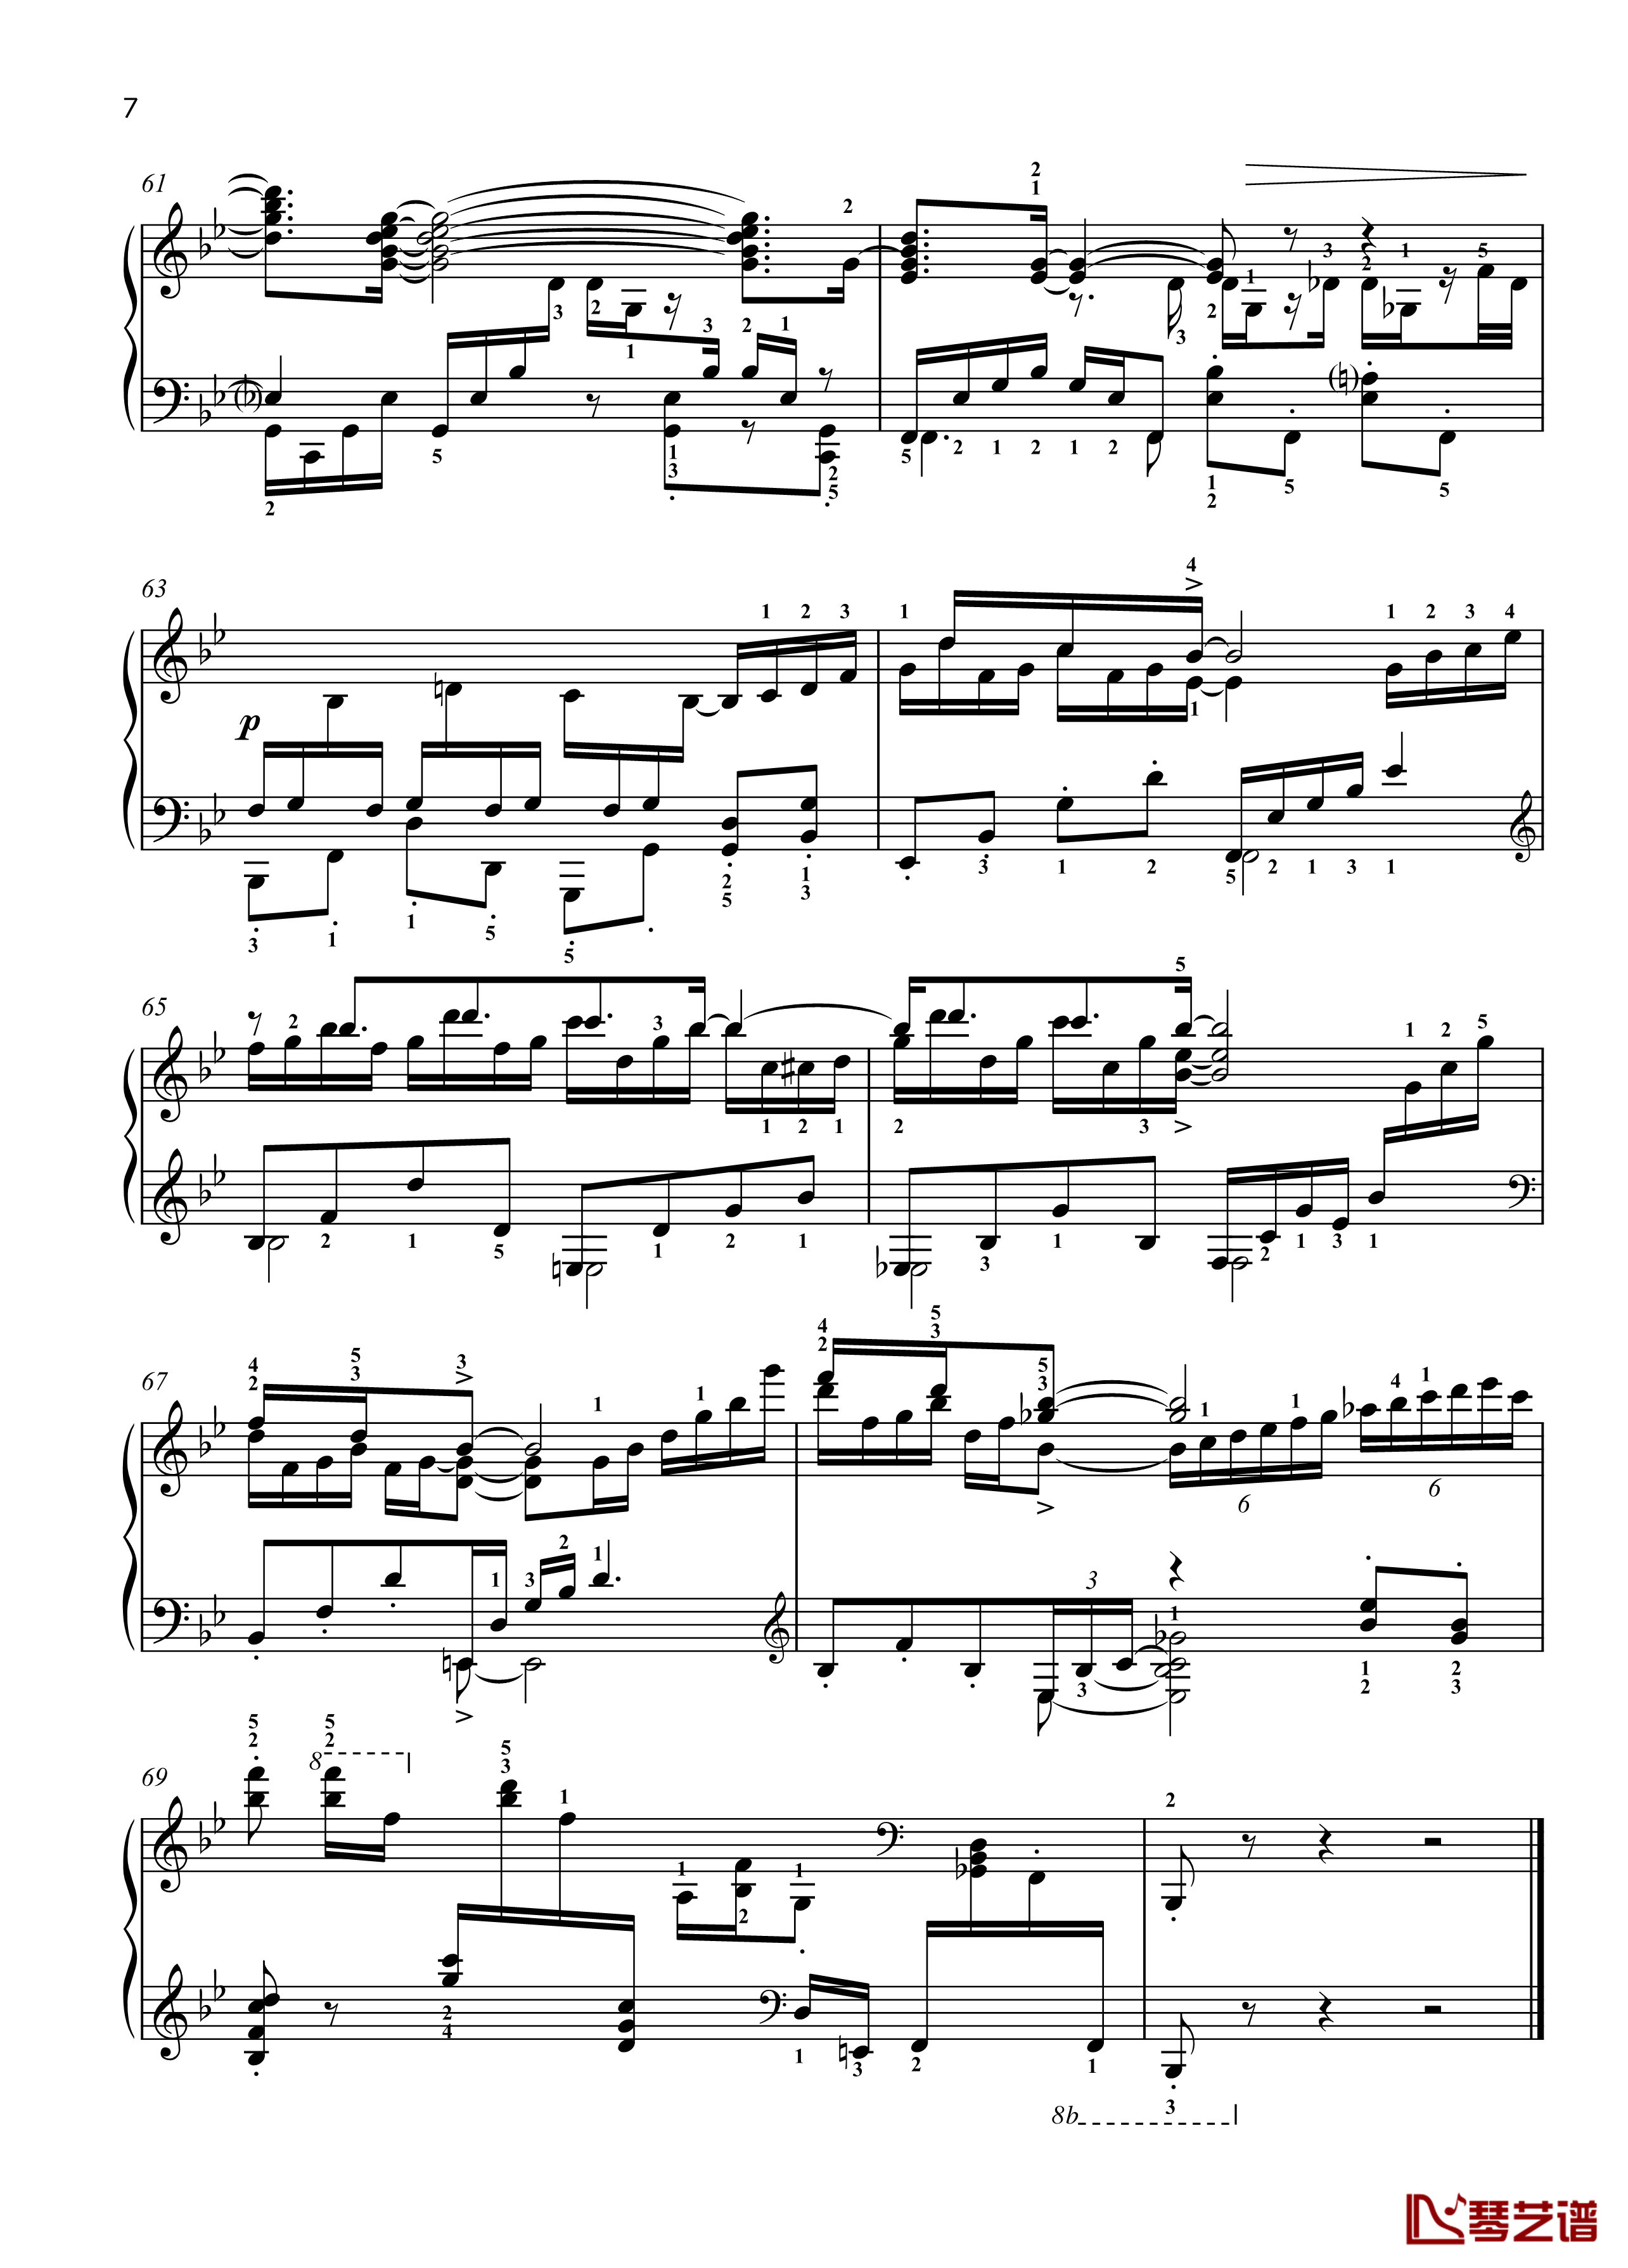 八首音乐会练习曲钢琴谱-Eight Concert ?tudes Op 40 - No. 6. Pastoral. Allegro moderato-爵士-尼古拉·凯帕斯汀7